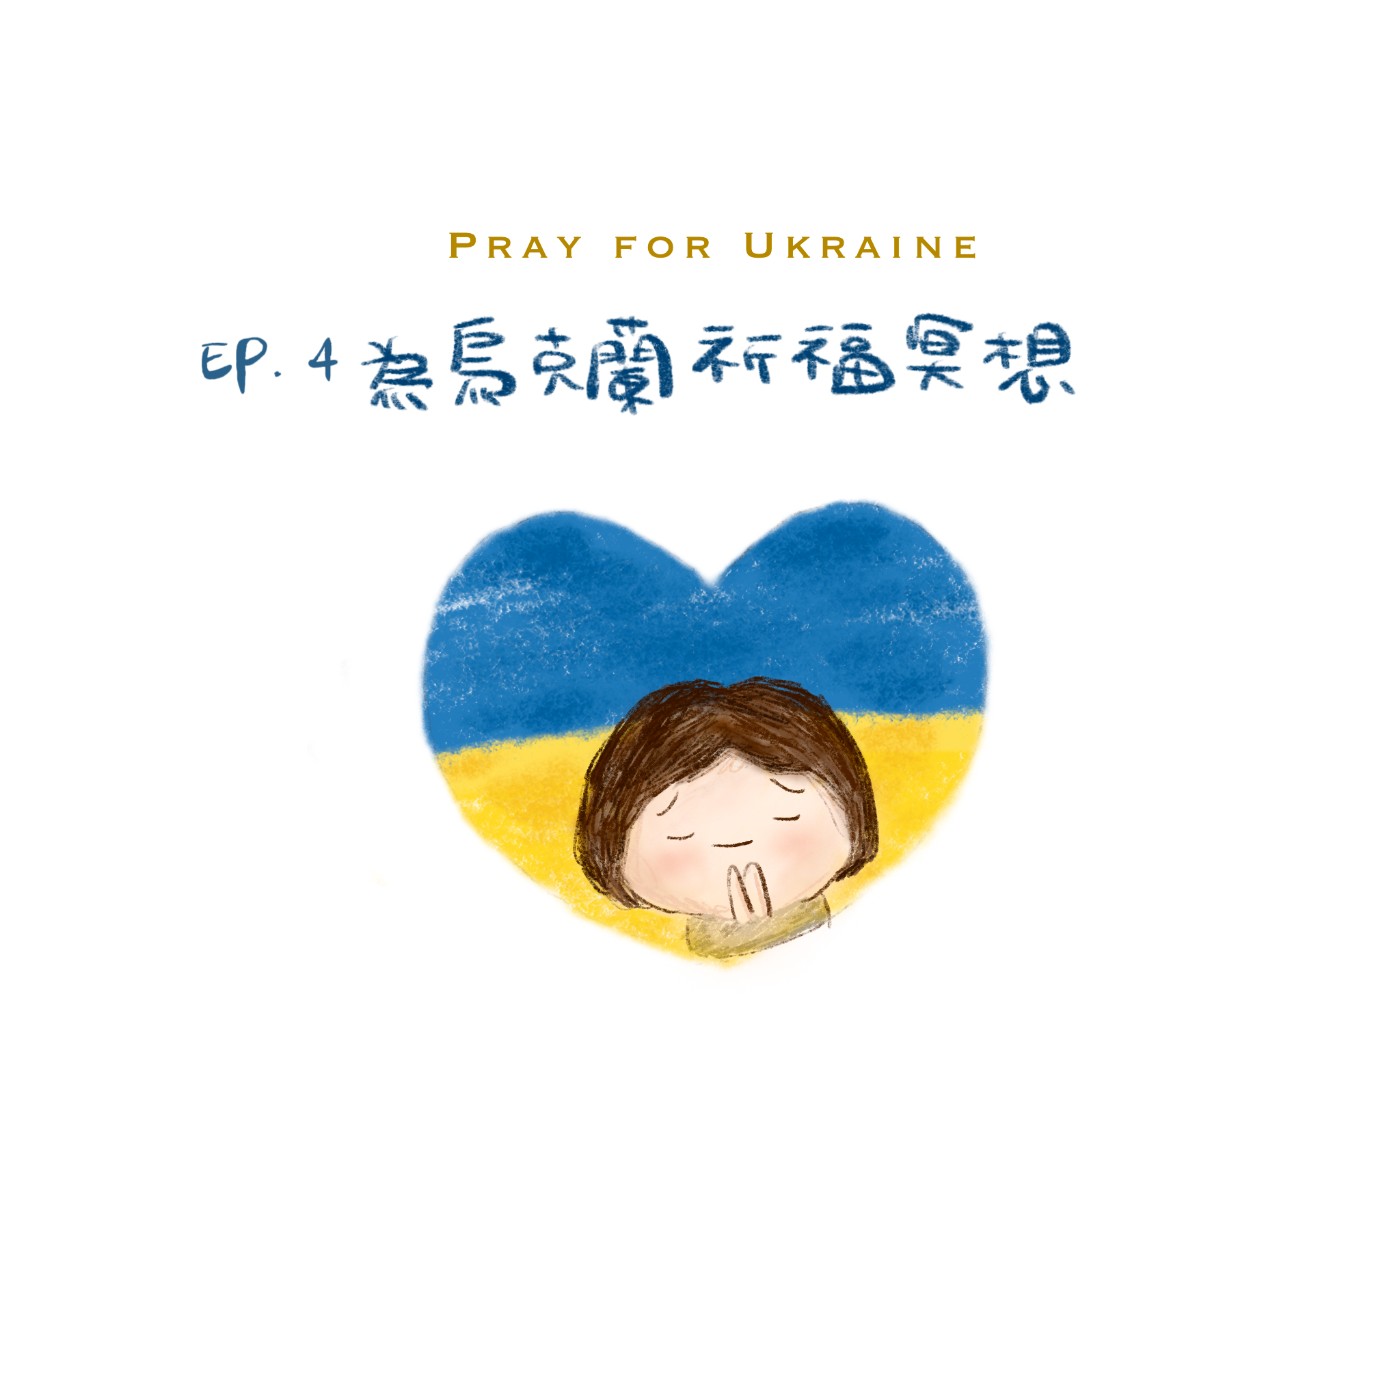 EP.4 🌙冥想引導 為烏克蘭祈福冥想（也可以替換想祝福的對象）